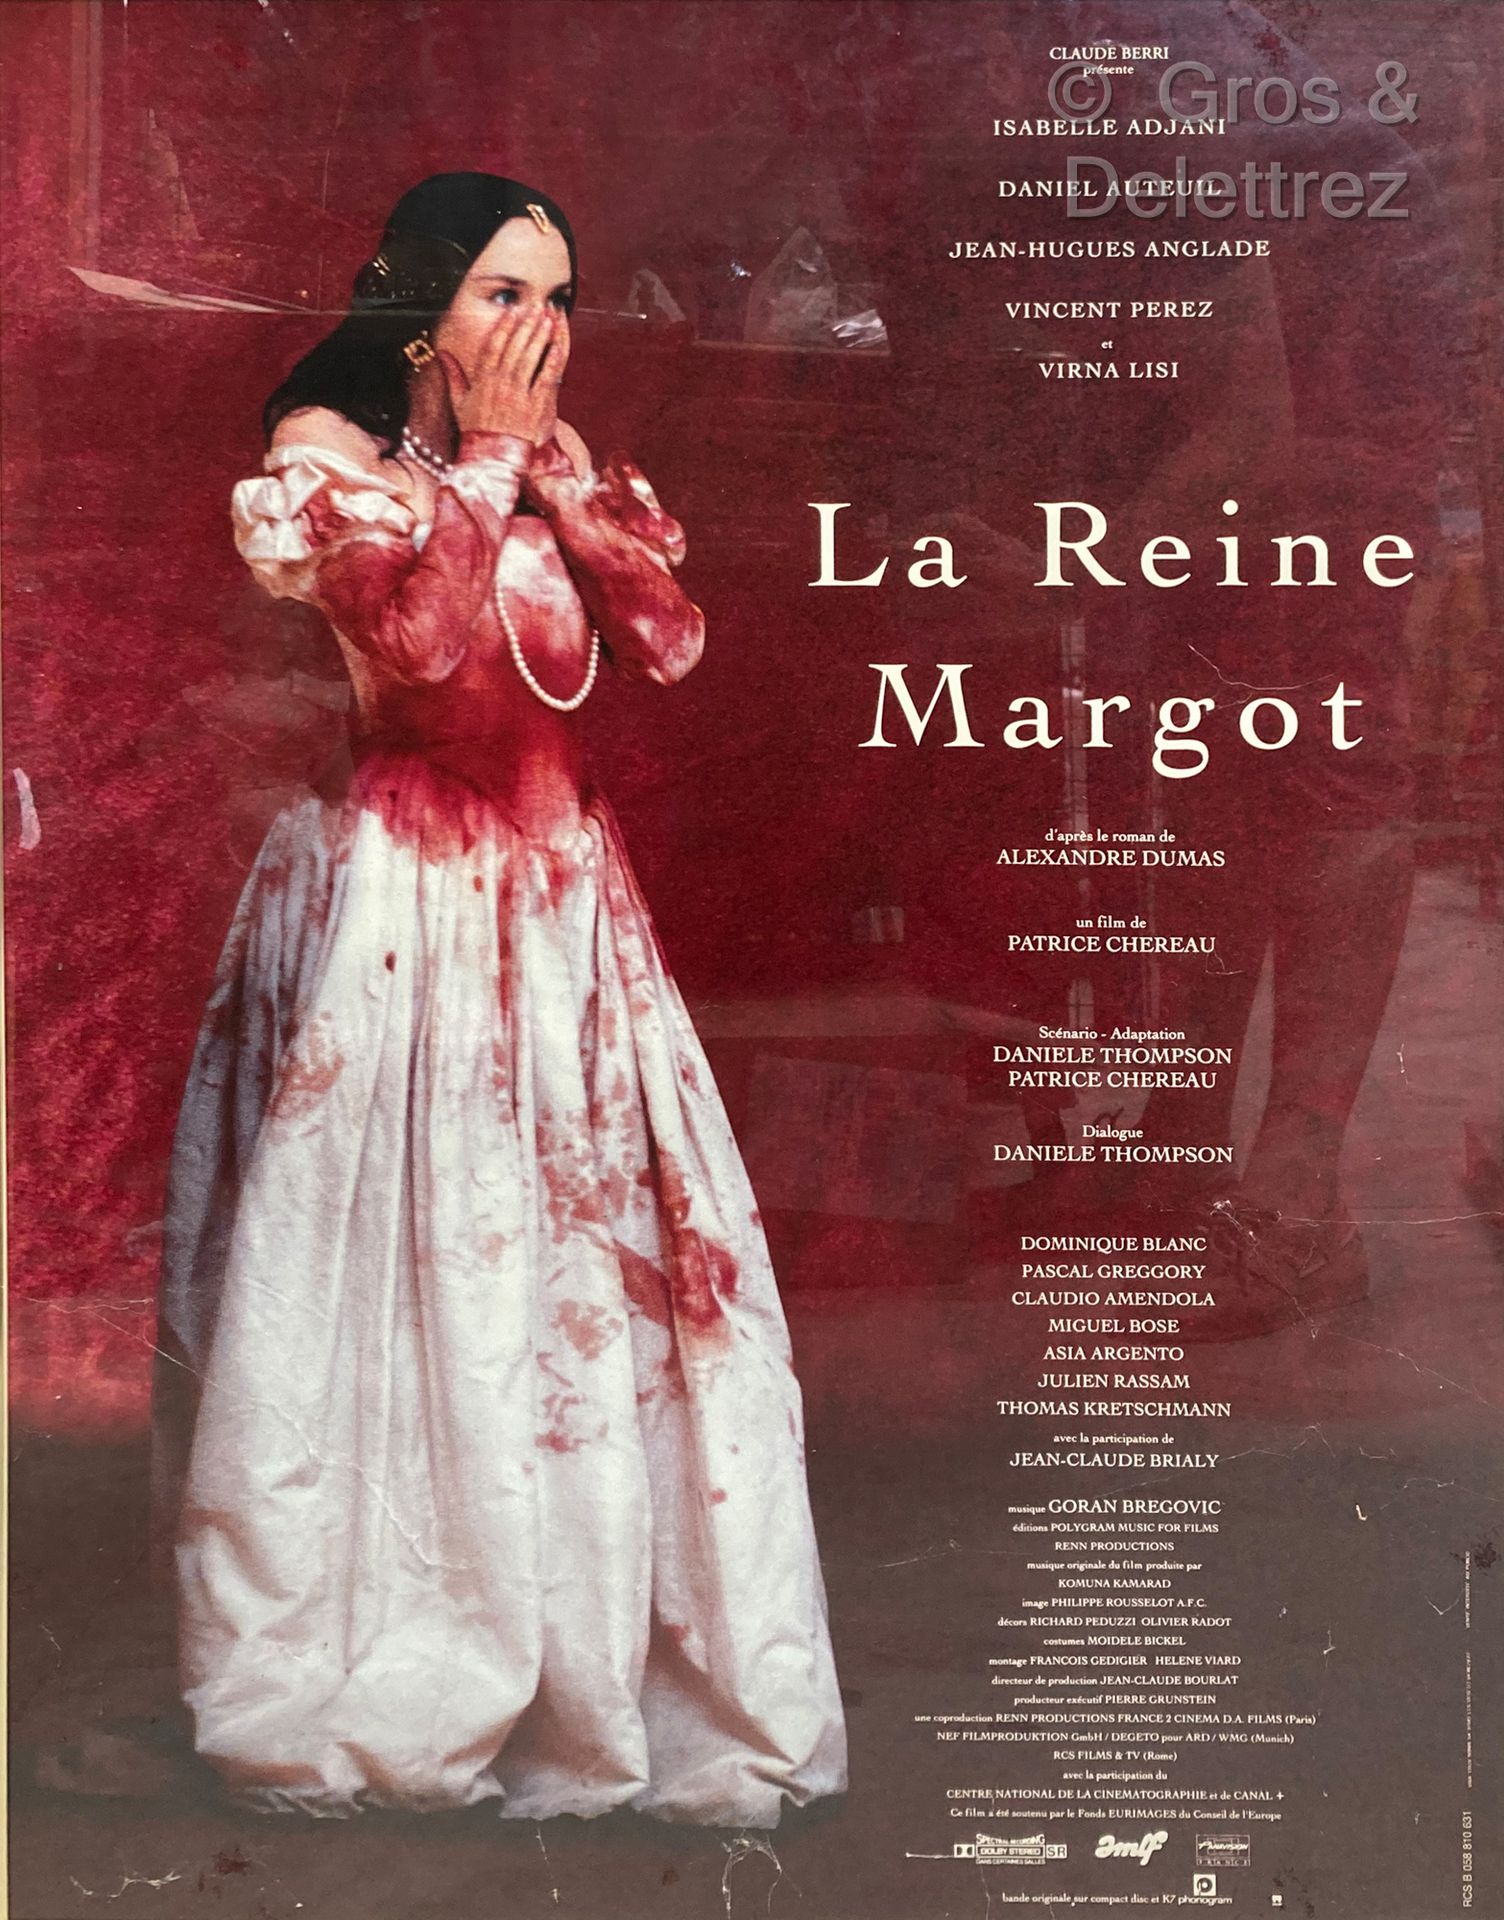 Patrice Chereau REGINA MARGOT

Locandina del film

79 x 59 cm sotto vetro